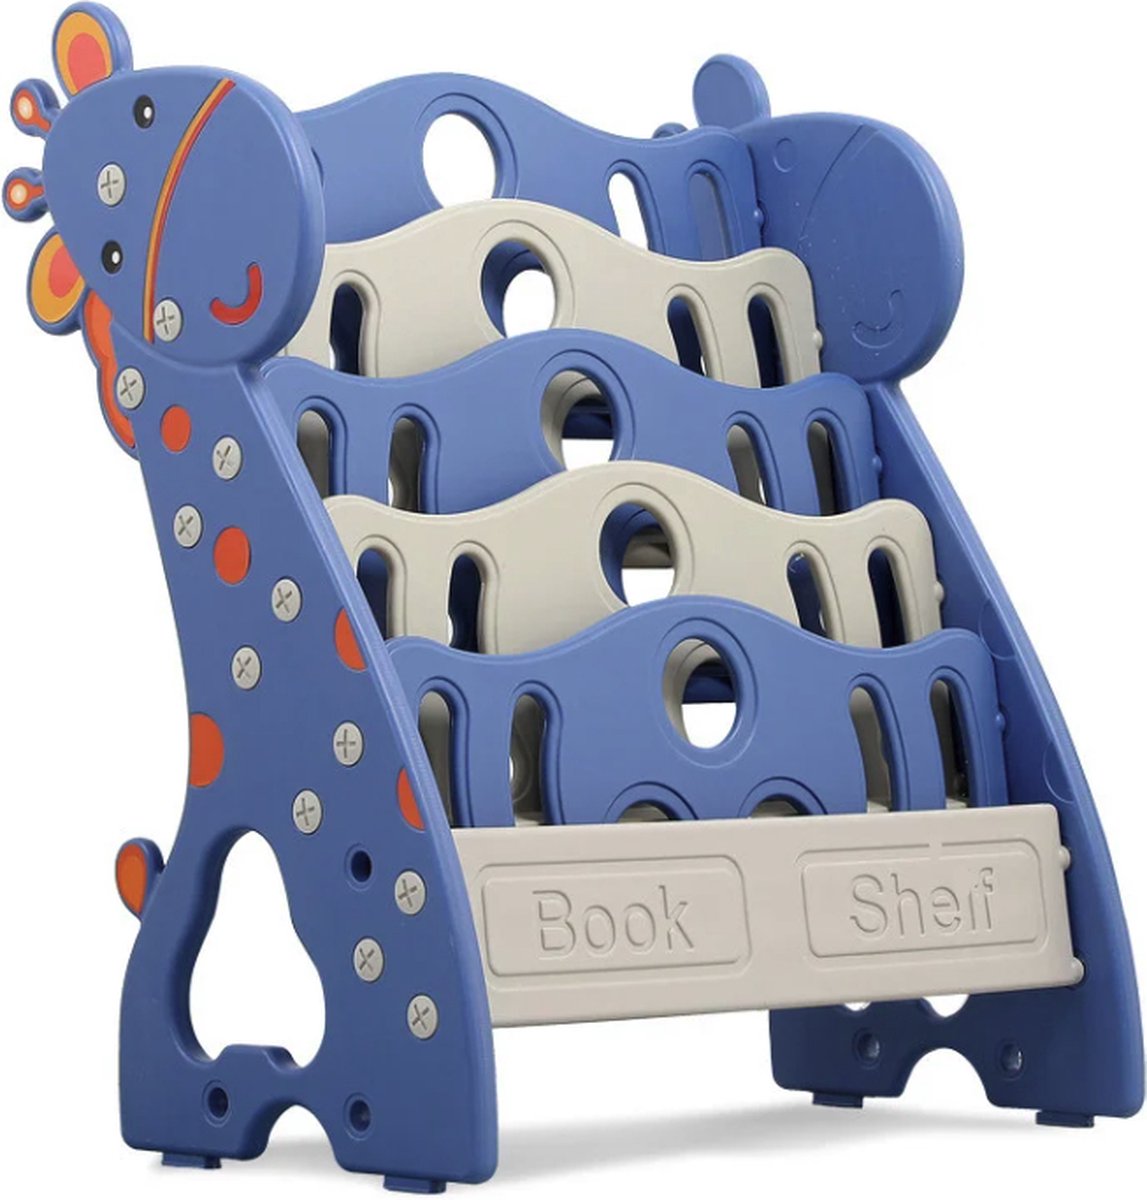 Buxibo Kinderkamer Boekenrek - Kunststof met 2 Opbergbakken - Boekenkast/Boekenplank/Boekenrek - 65x36x80cm - Blauw